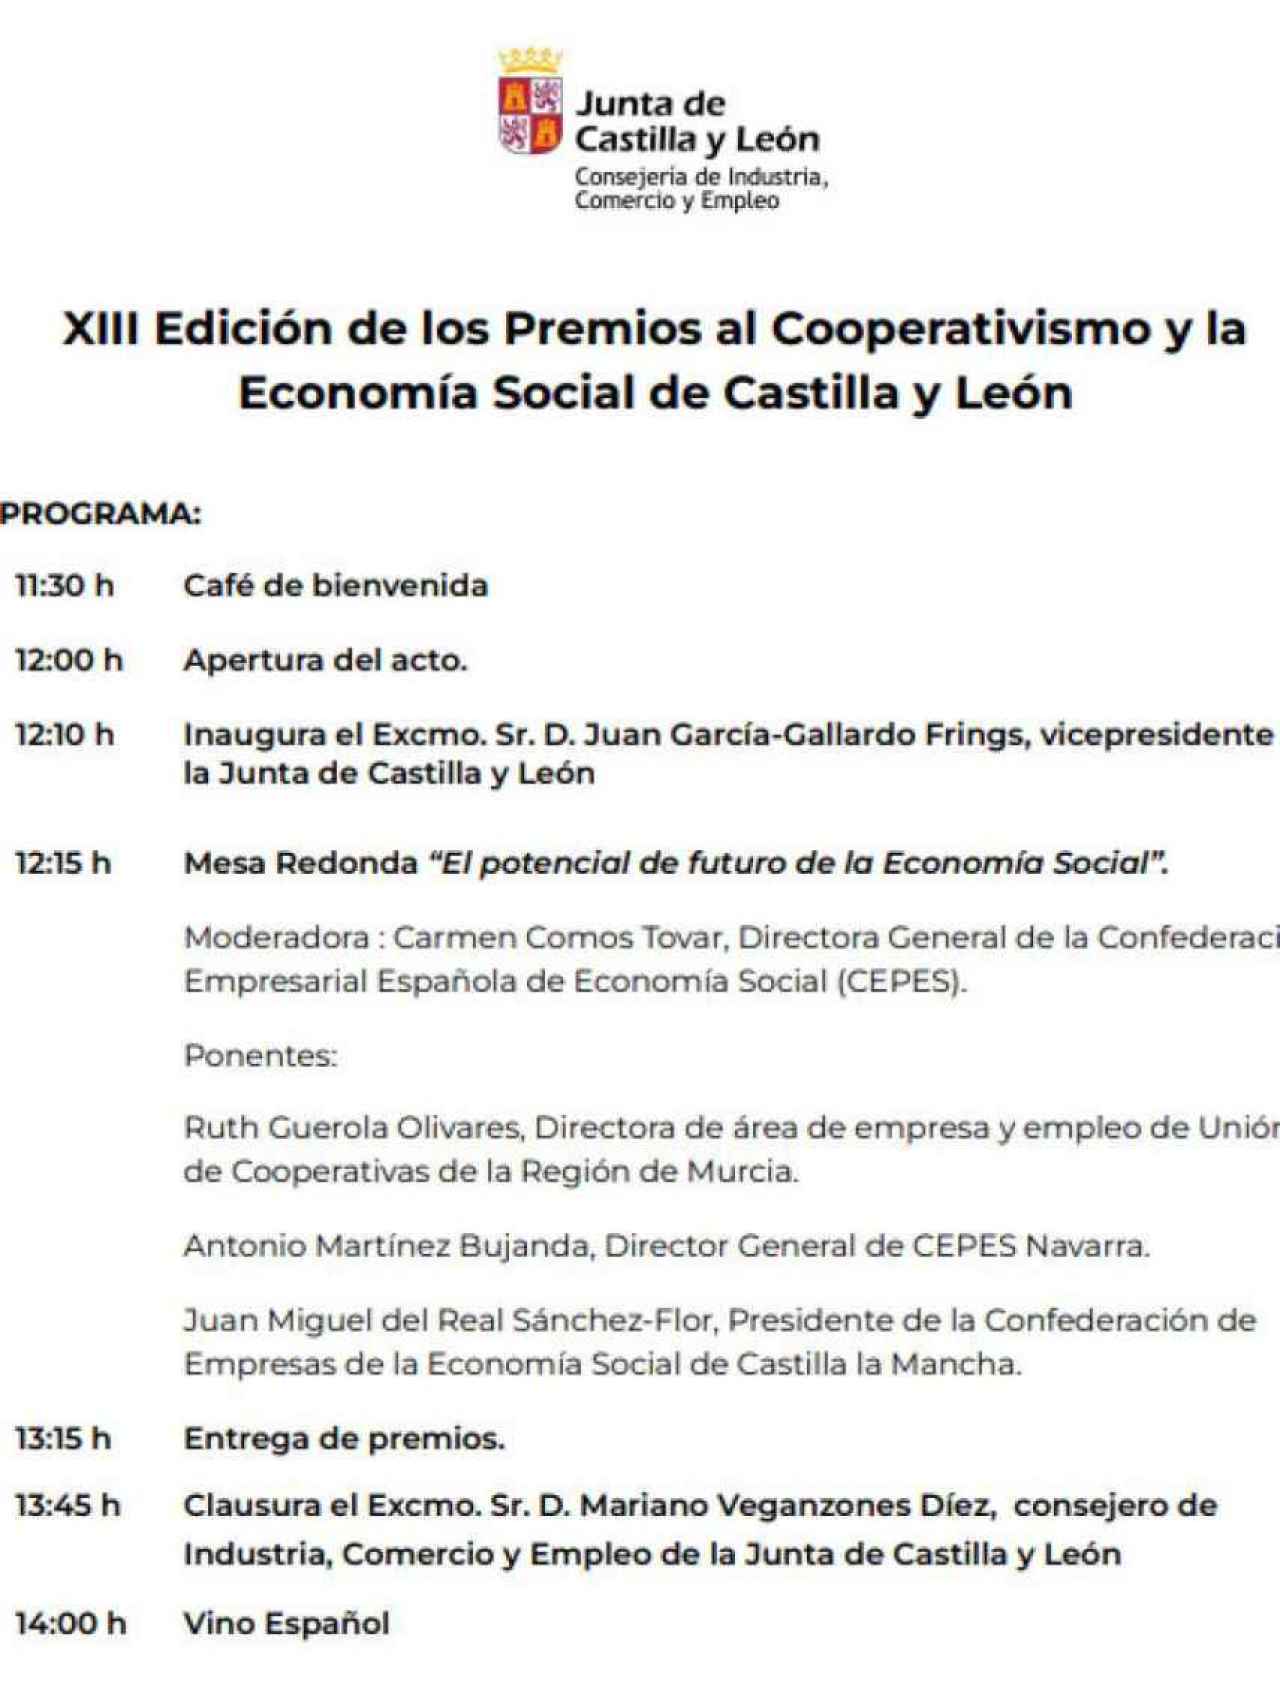 Programa completo de los premios Castilla y León al Cooperativismo y Economía Social.